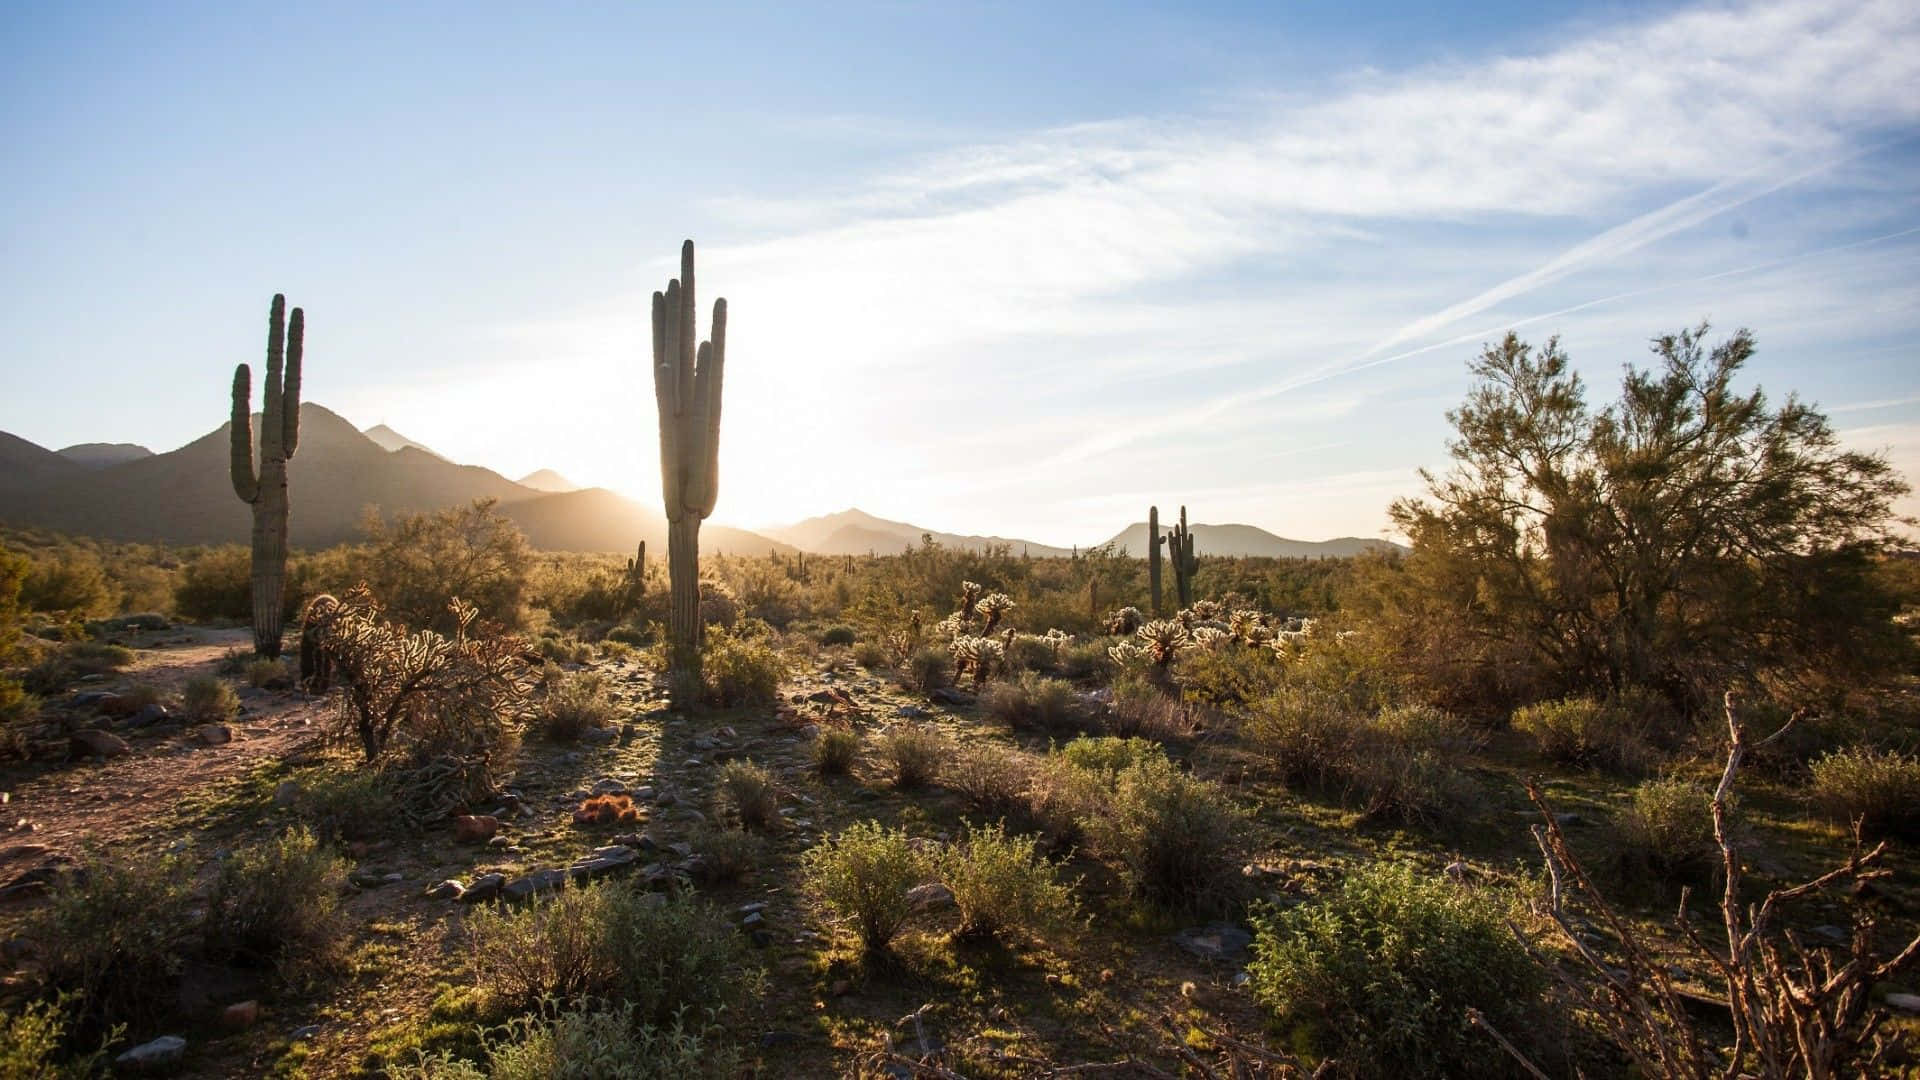 Tag på tur til Arizona for at opleve naturens skønhed.